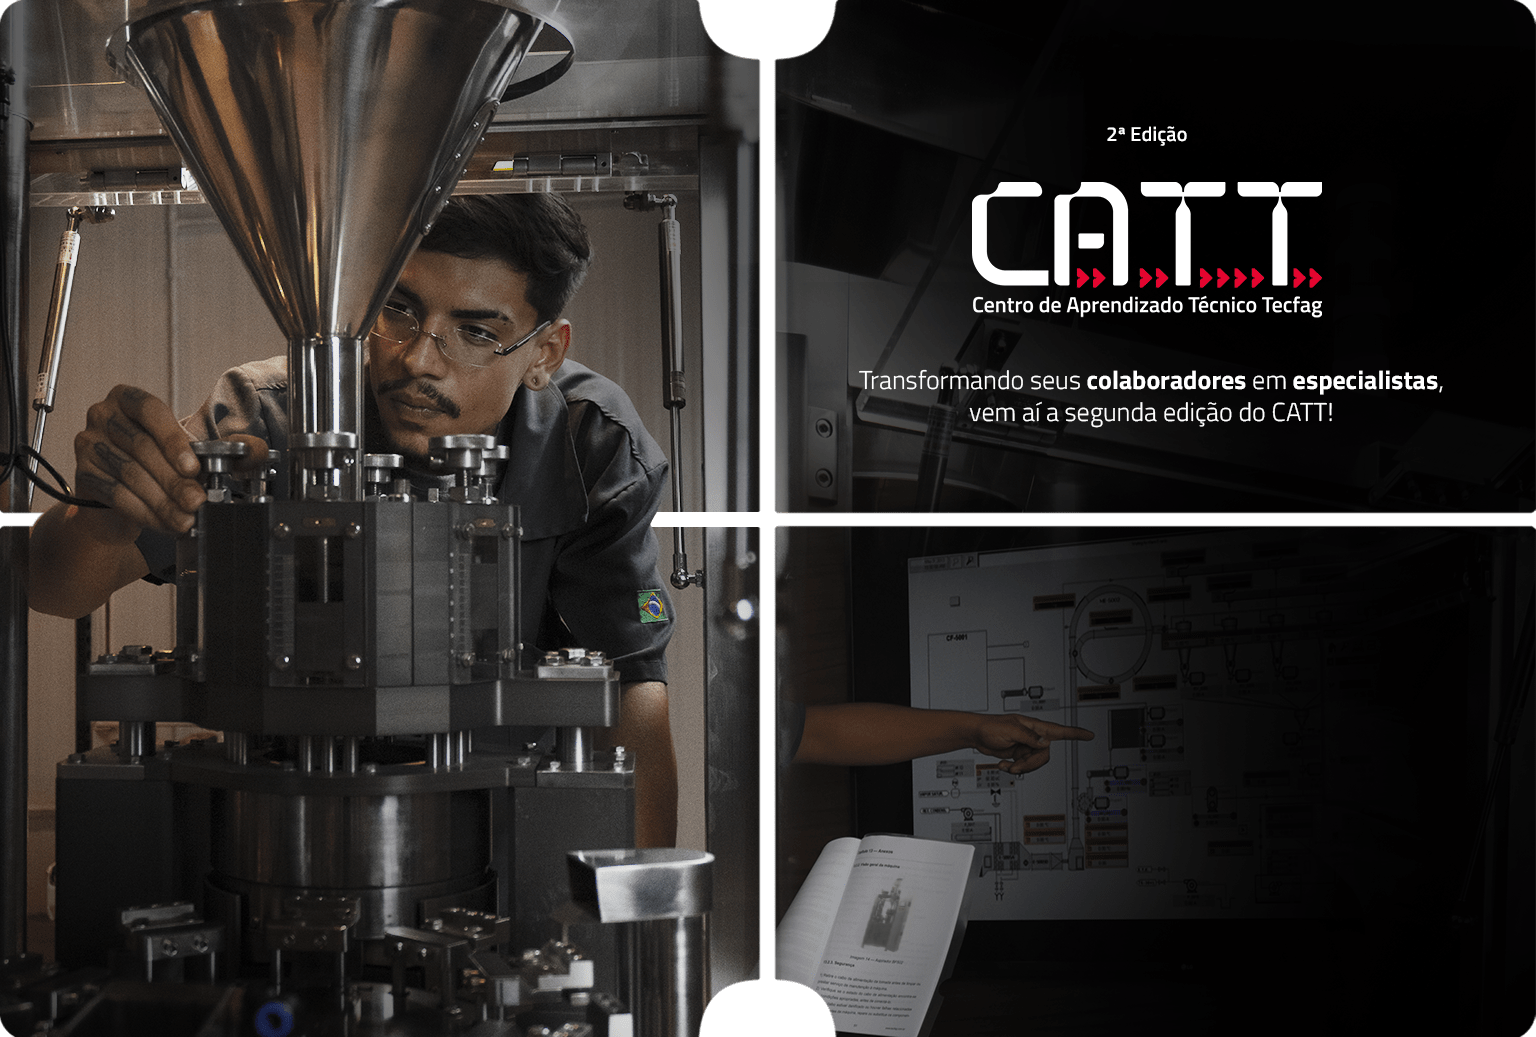 Segunda edição CATT (Centro de Aprendizado Técnico Tecfag)